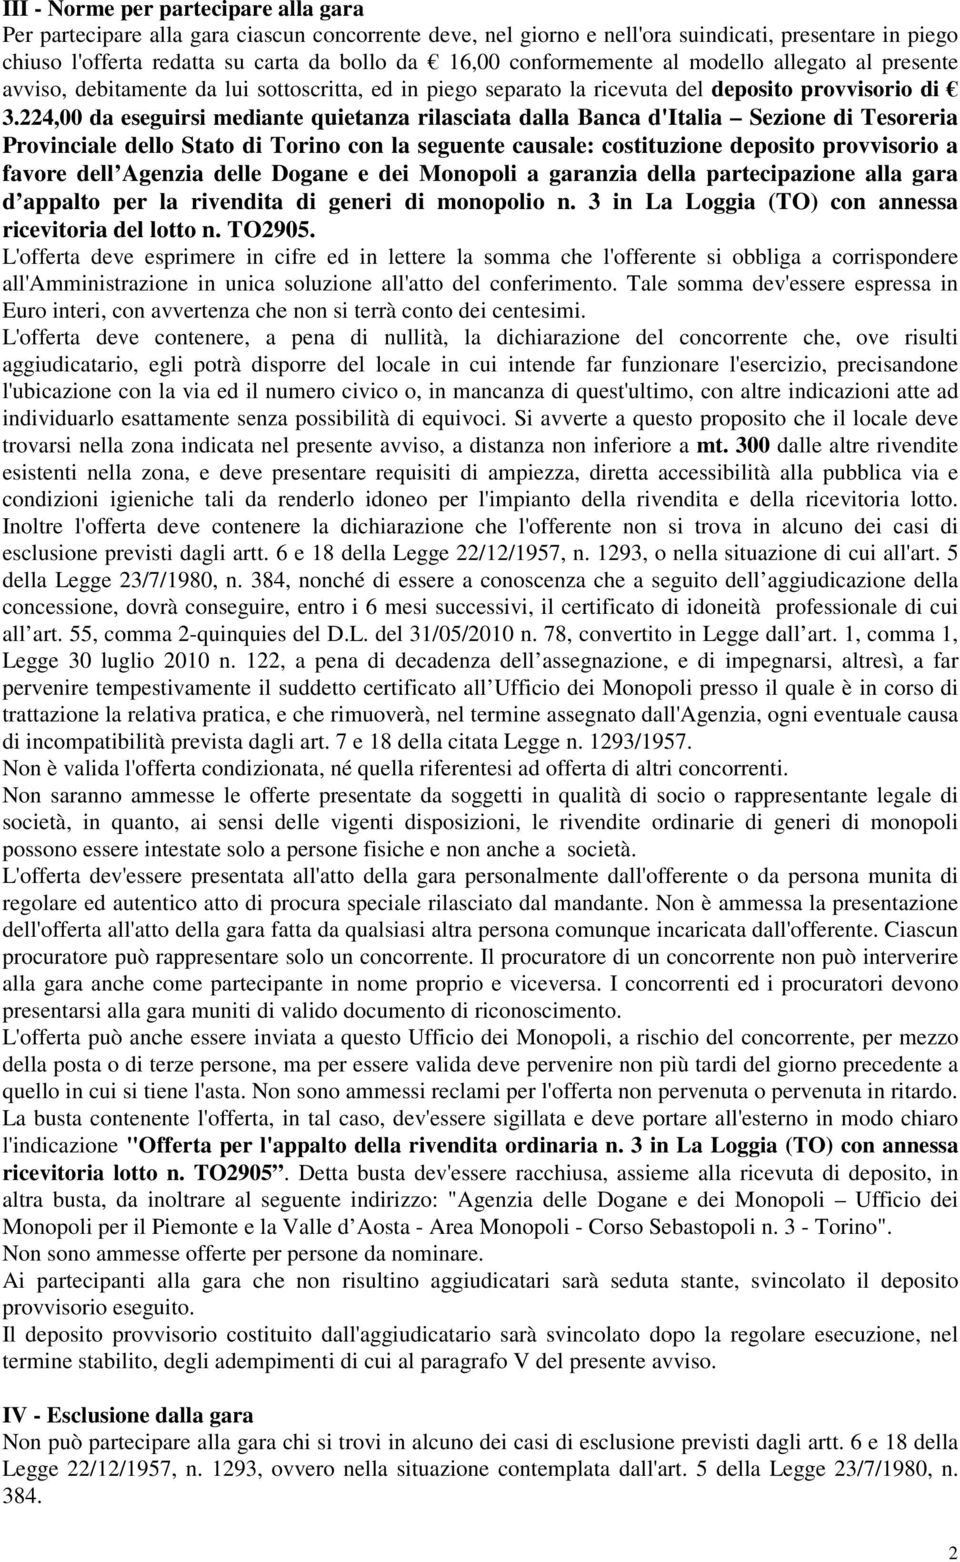 224,00 da eseguirsi mediante quietanza rilasciata dalla Banca d'italia Sezione di Tesoreria Provinciale dello Stato di Torino con la seguente causale: costituzione deposito provvisorio a favore dell